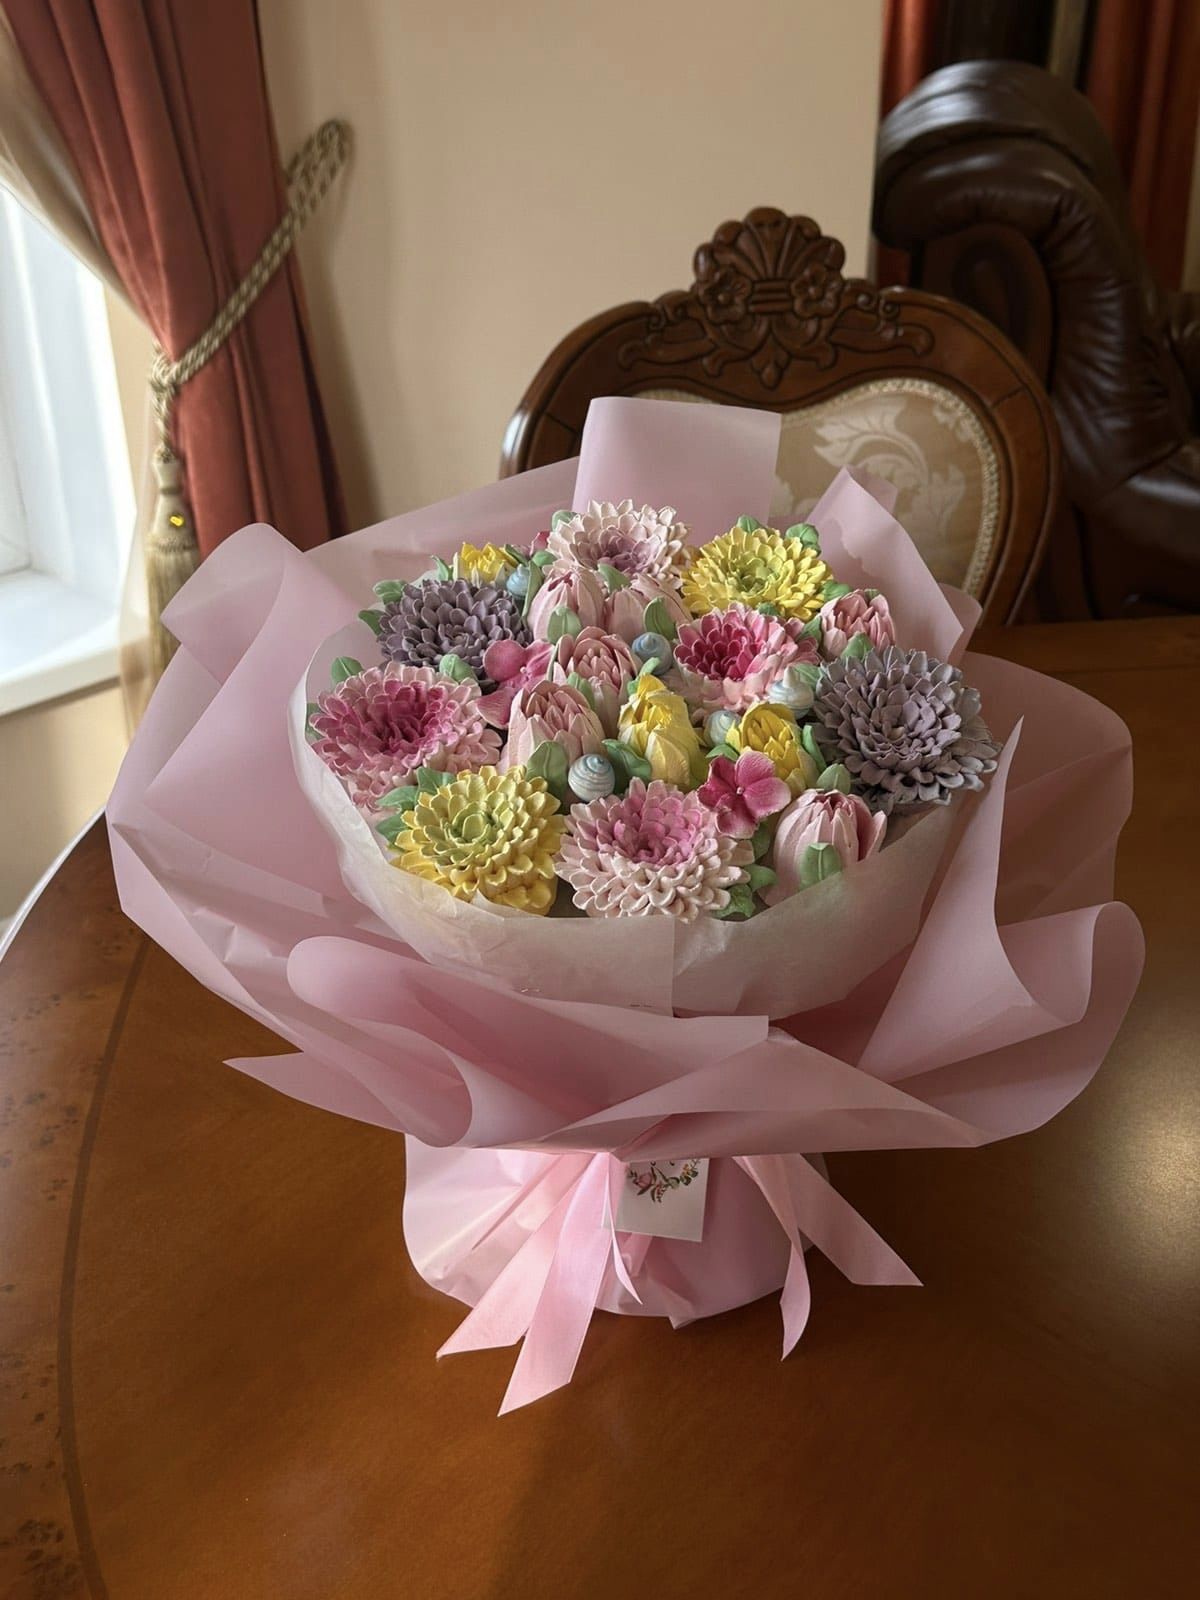 Переяславка Наталія Трошина створює зефірні букети квітів: кондитерством захопилася, випікаючи пряники для маленького онука